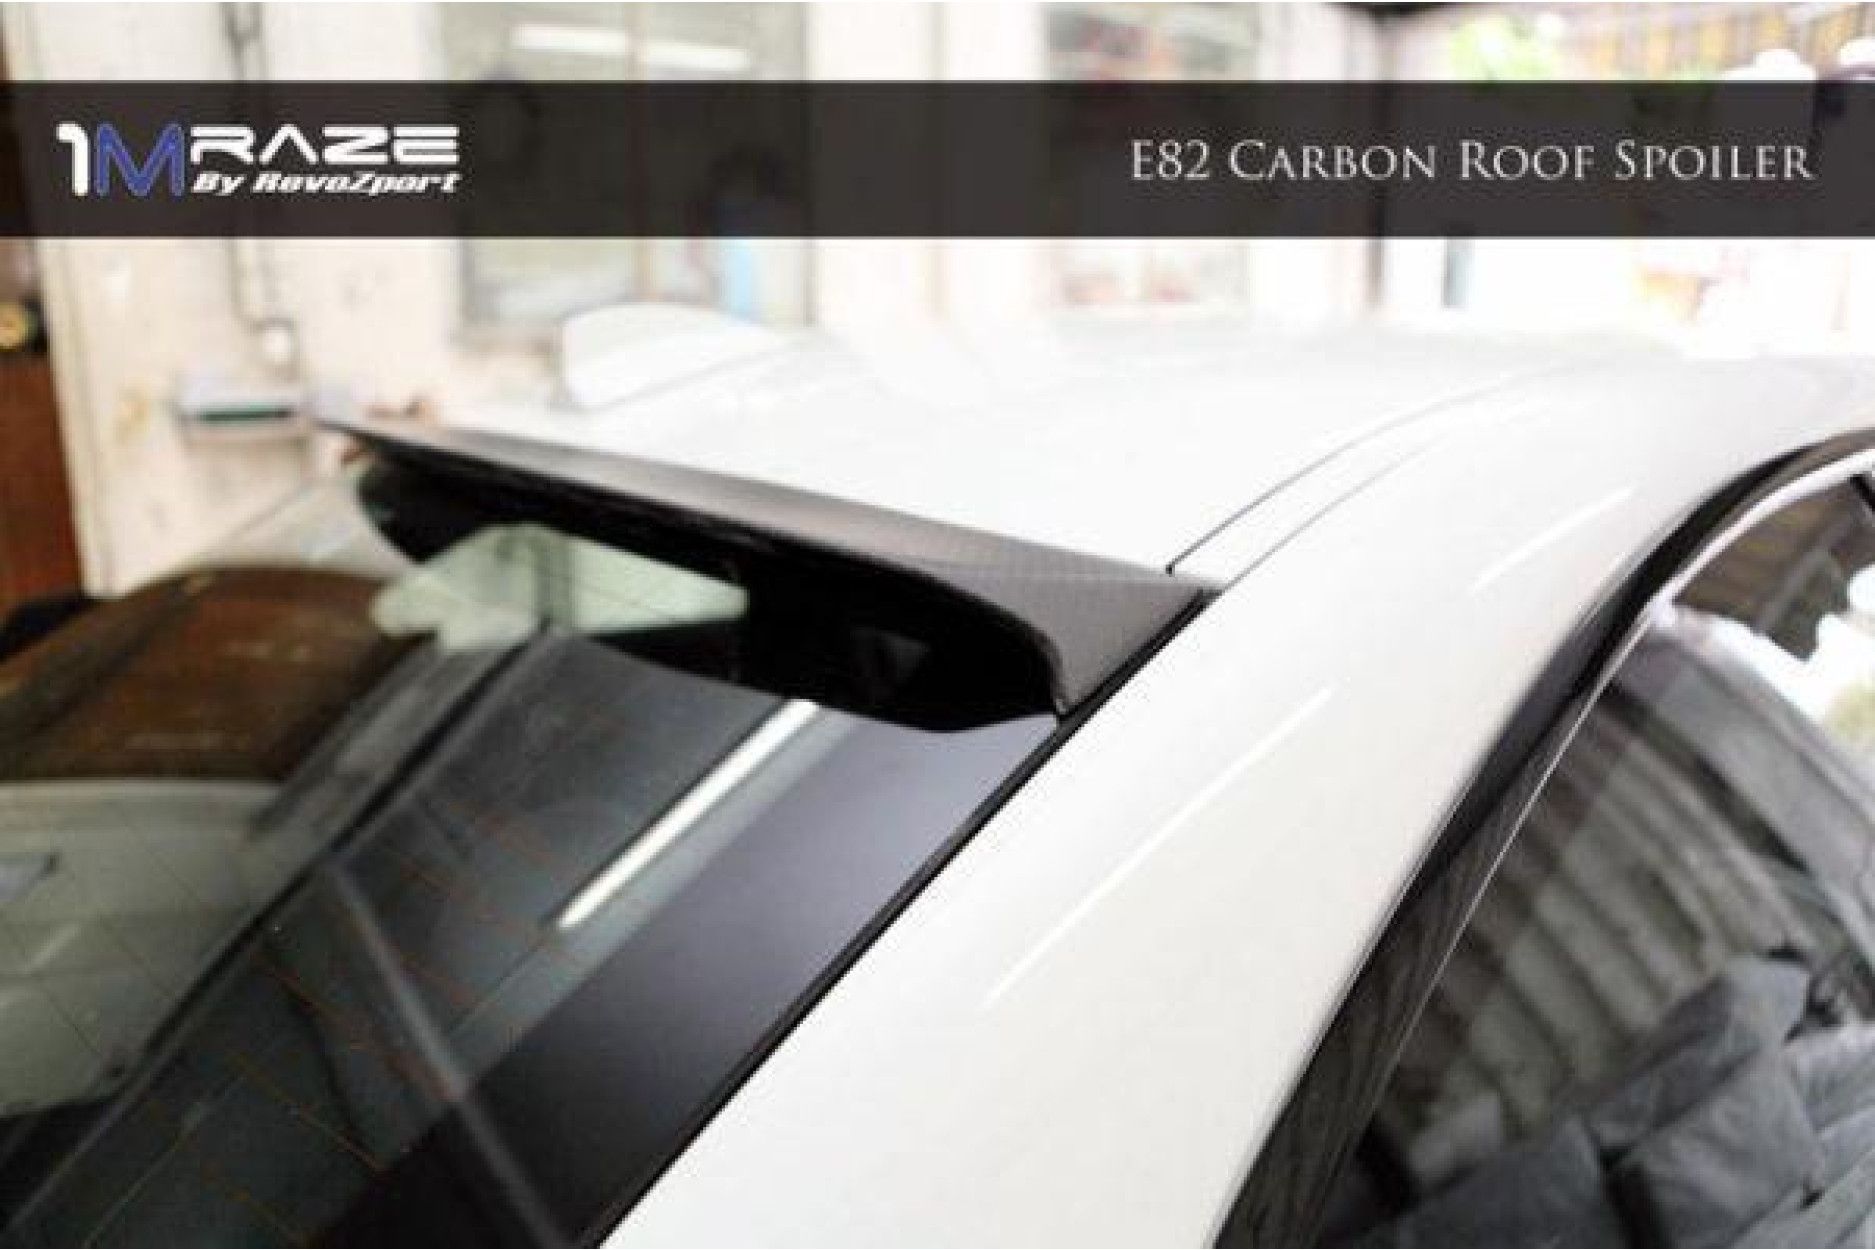 RevoZport Carbon roofspoiler for BMW 1er E82 1M